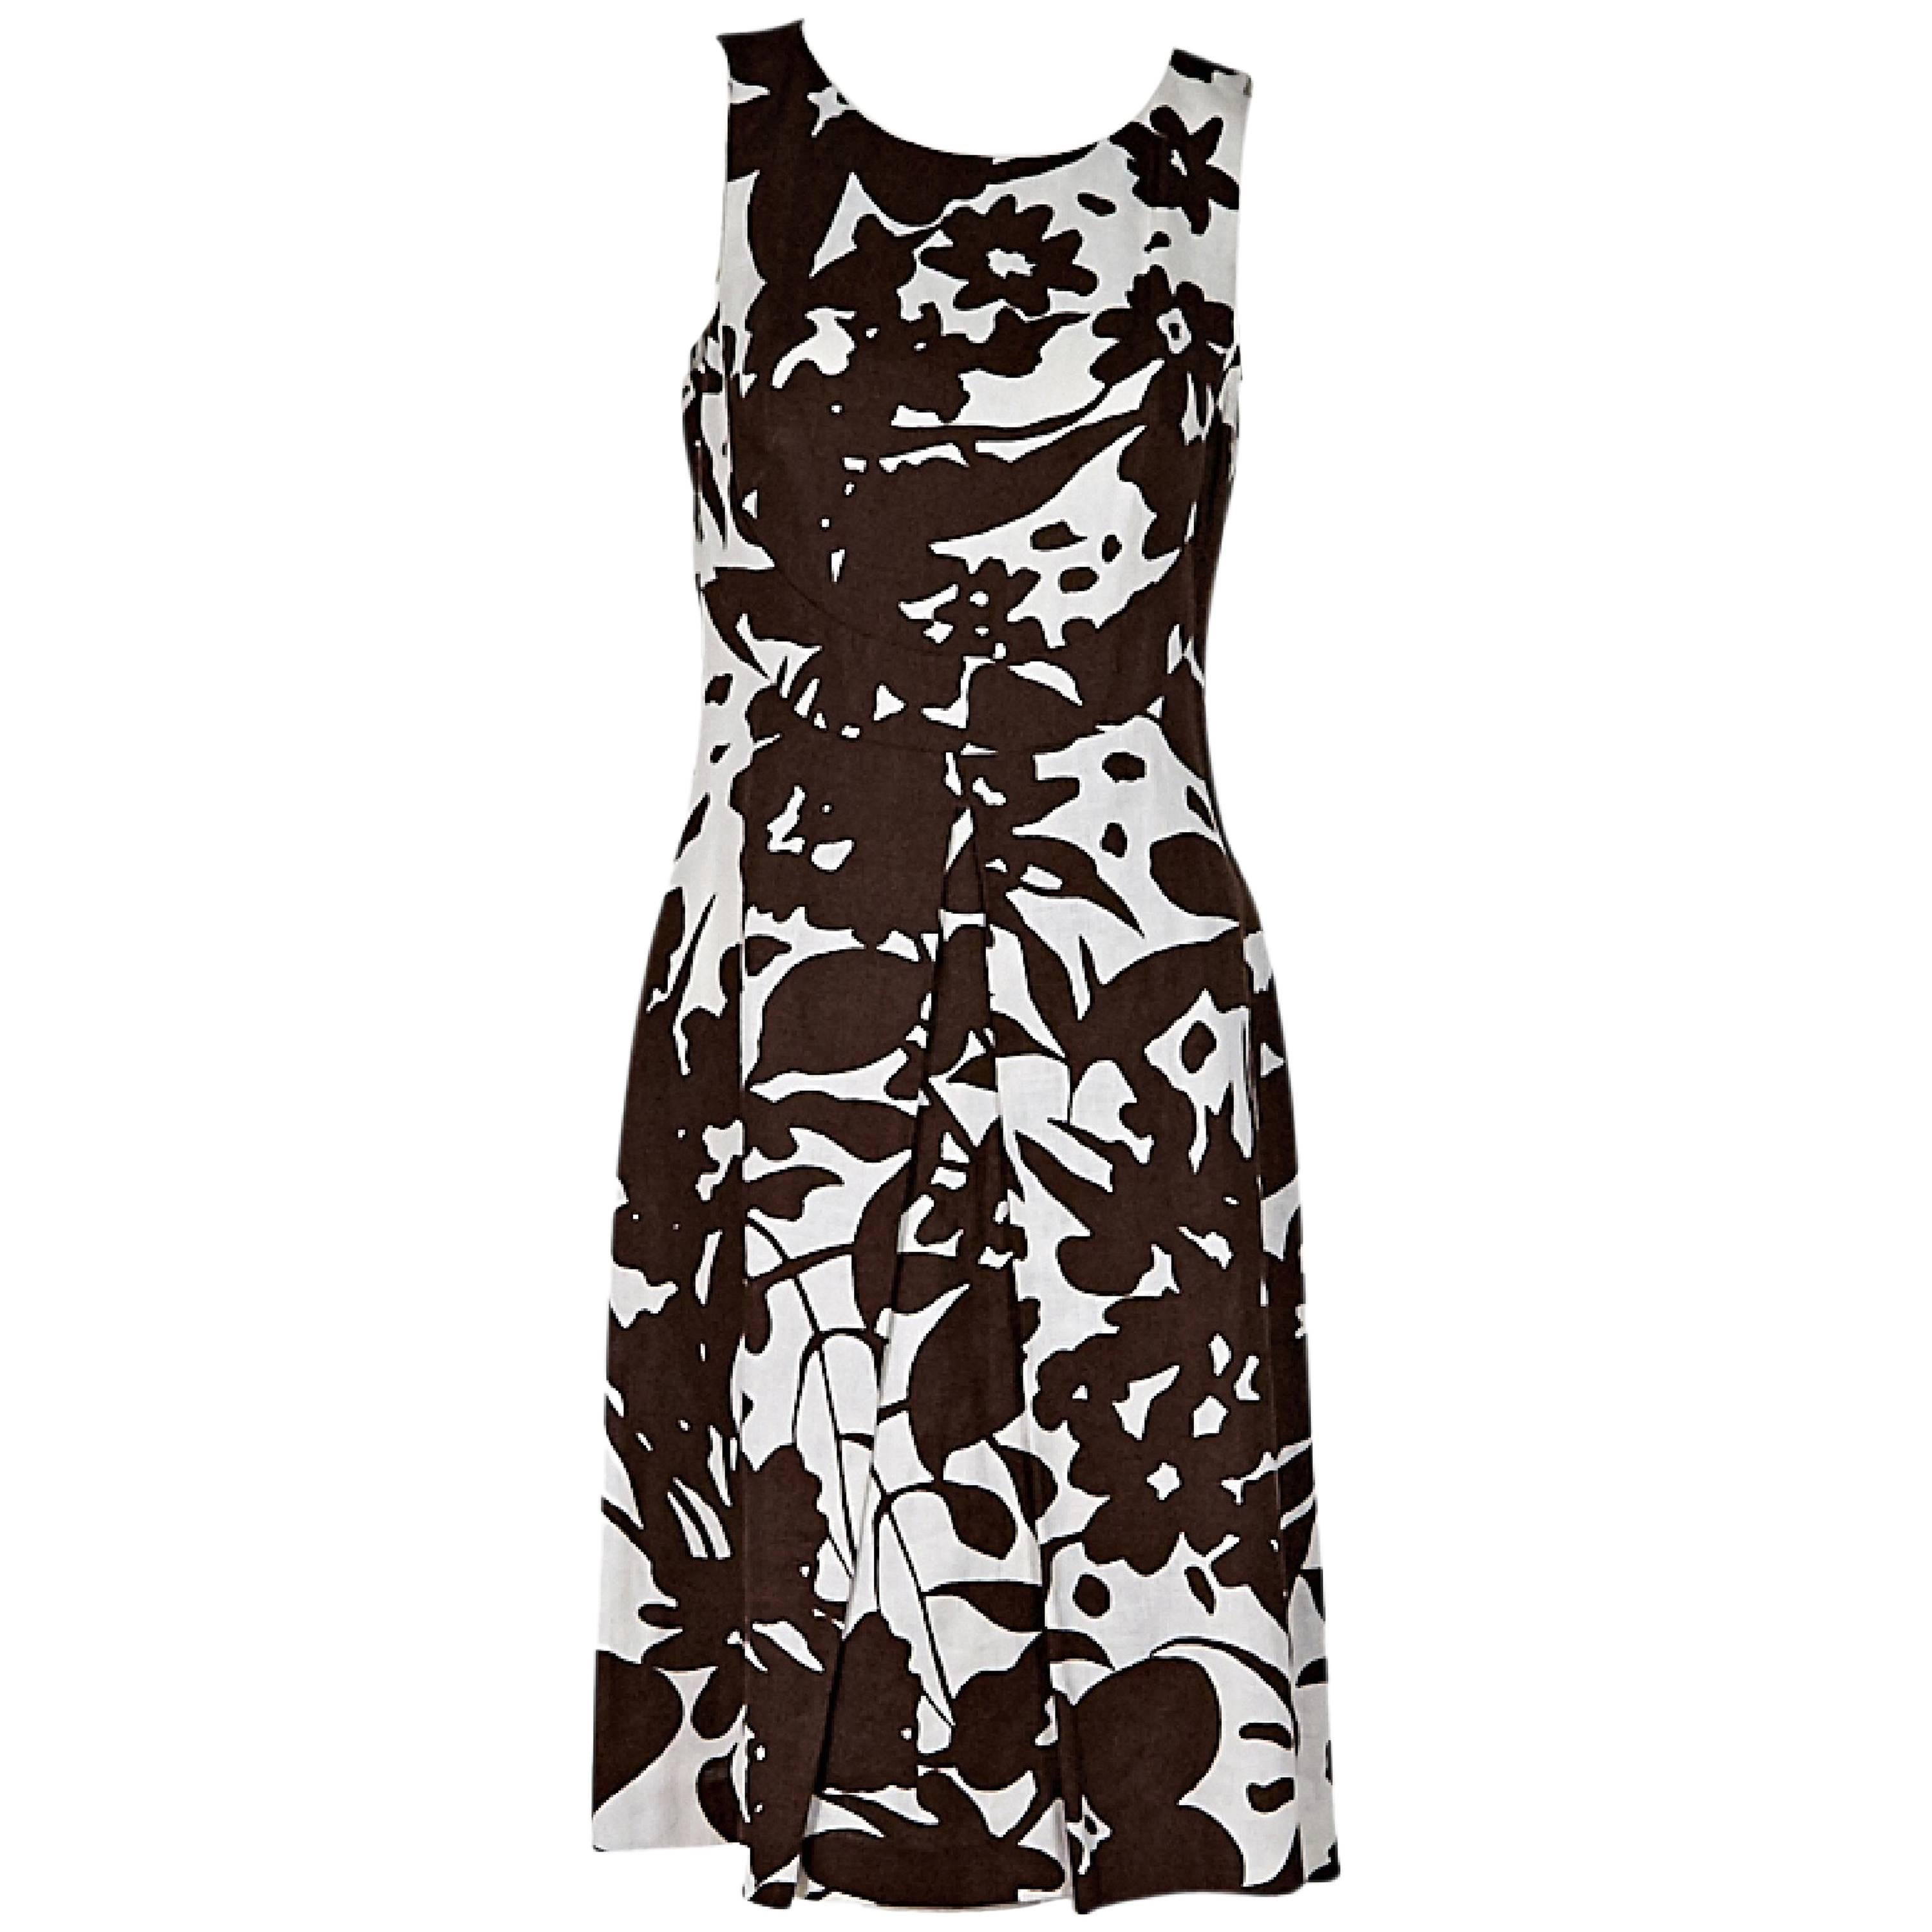 Brown & White Michael Kors Floral Sheath Dress